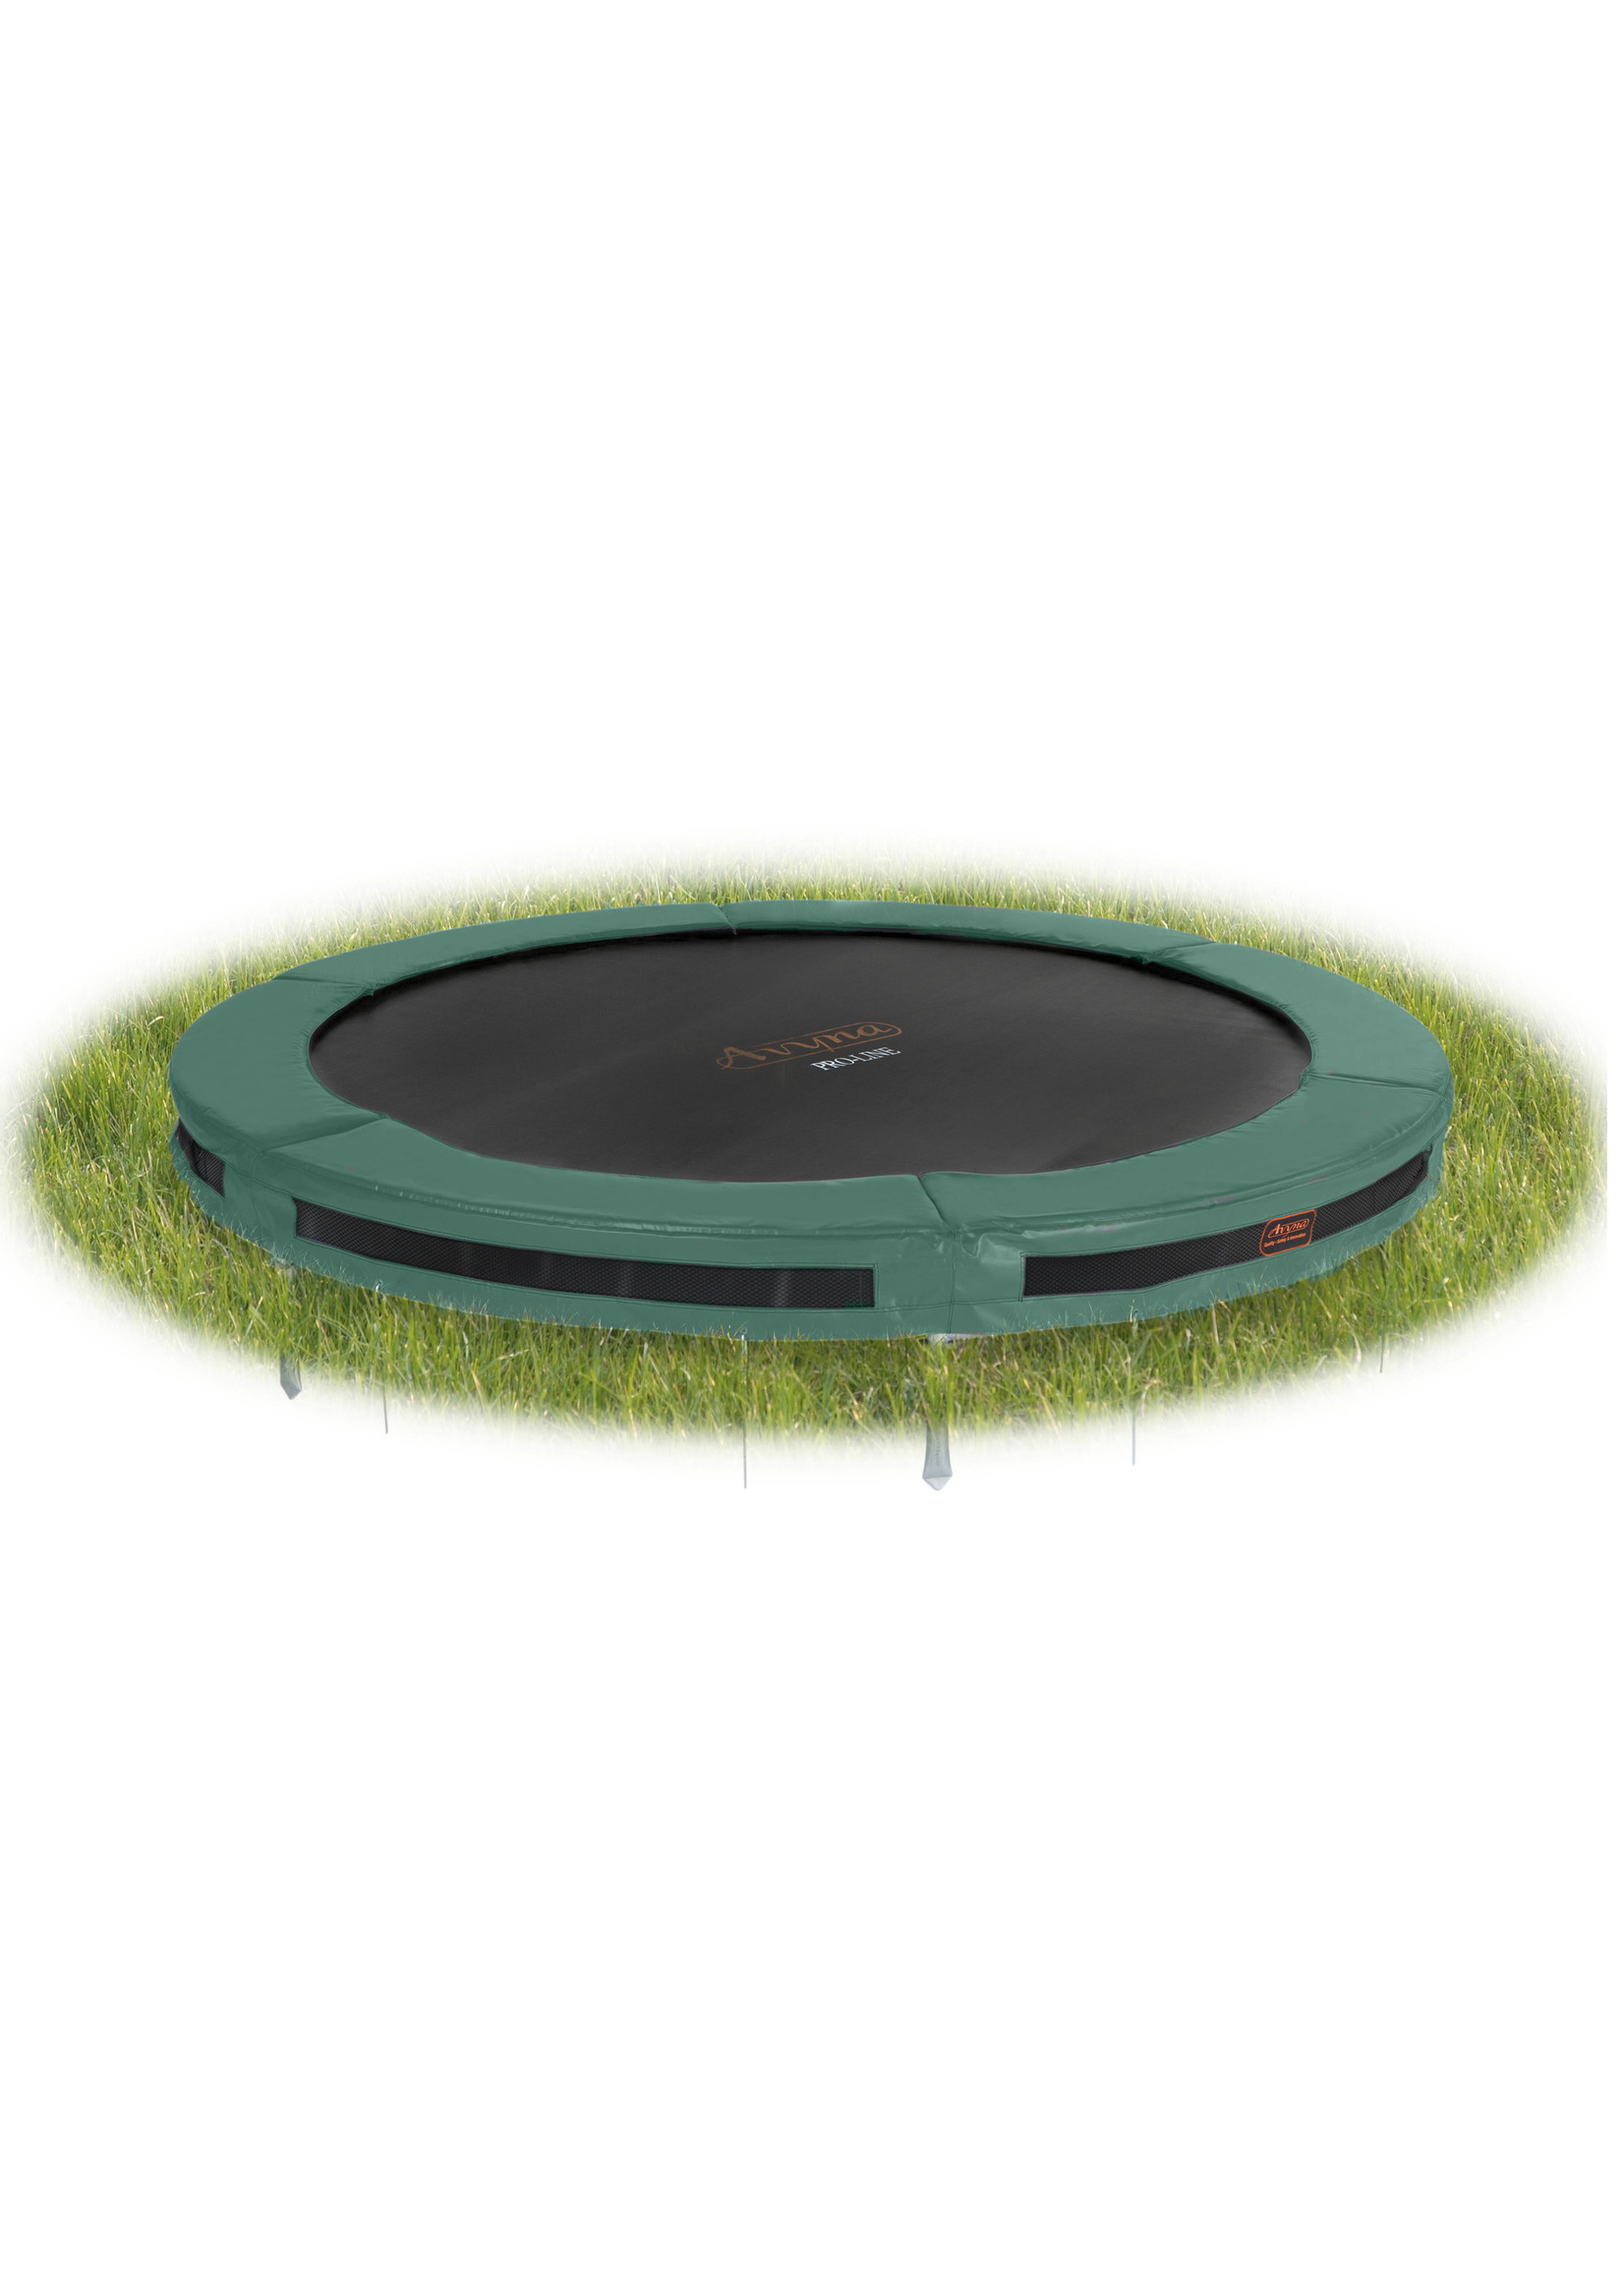 Avyna De ideale ronde trampoline voor in de grond, Inground : de Avyna Pro-Line van ‚àö√≤ 305 cm